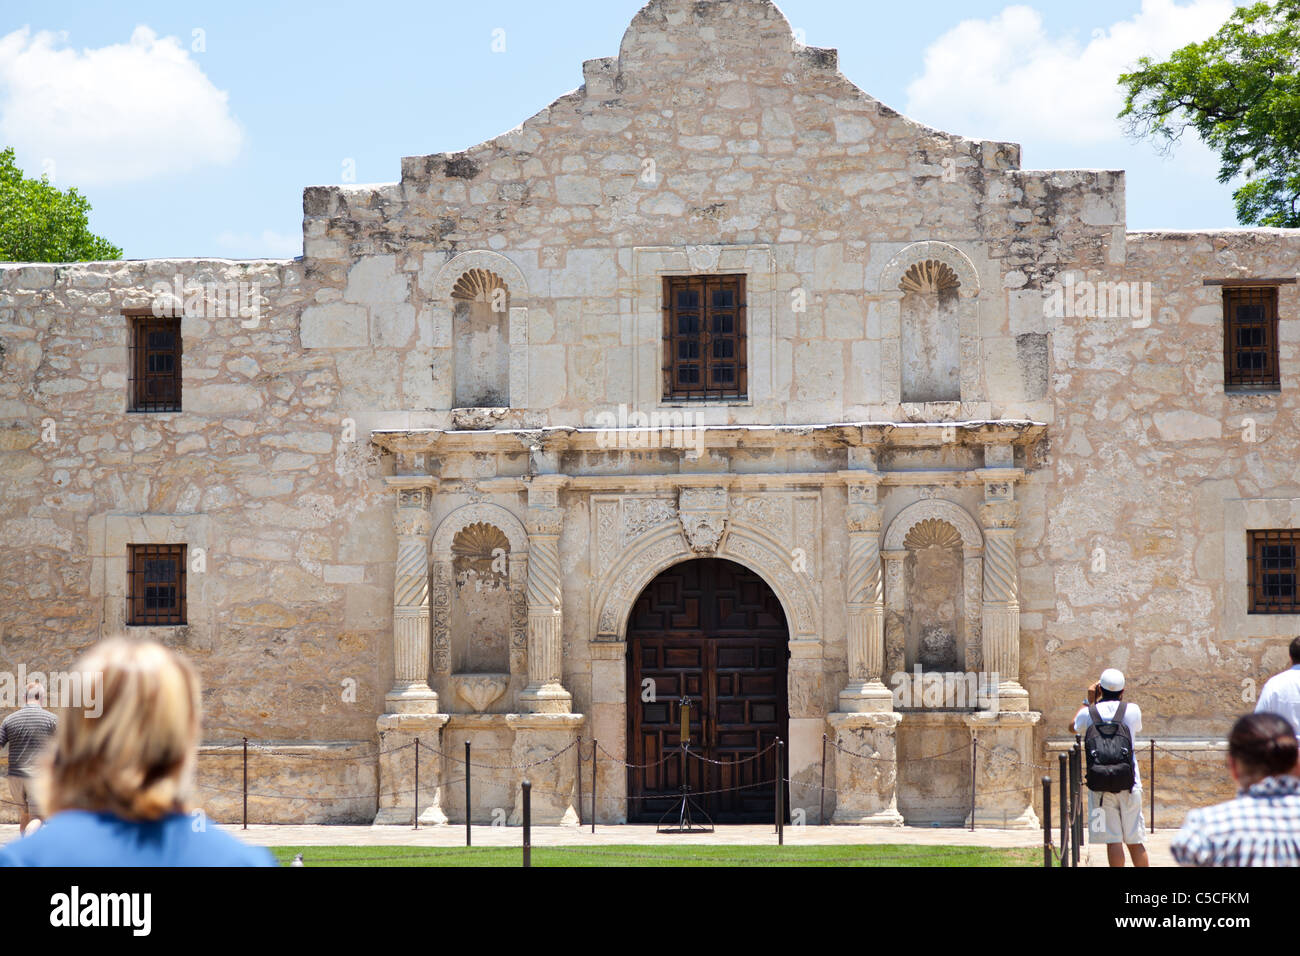 L'avant de l'Alamo à San Antonio, Texas, United States avec les touristes à la recherche Banque D'Images